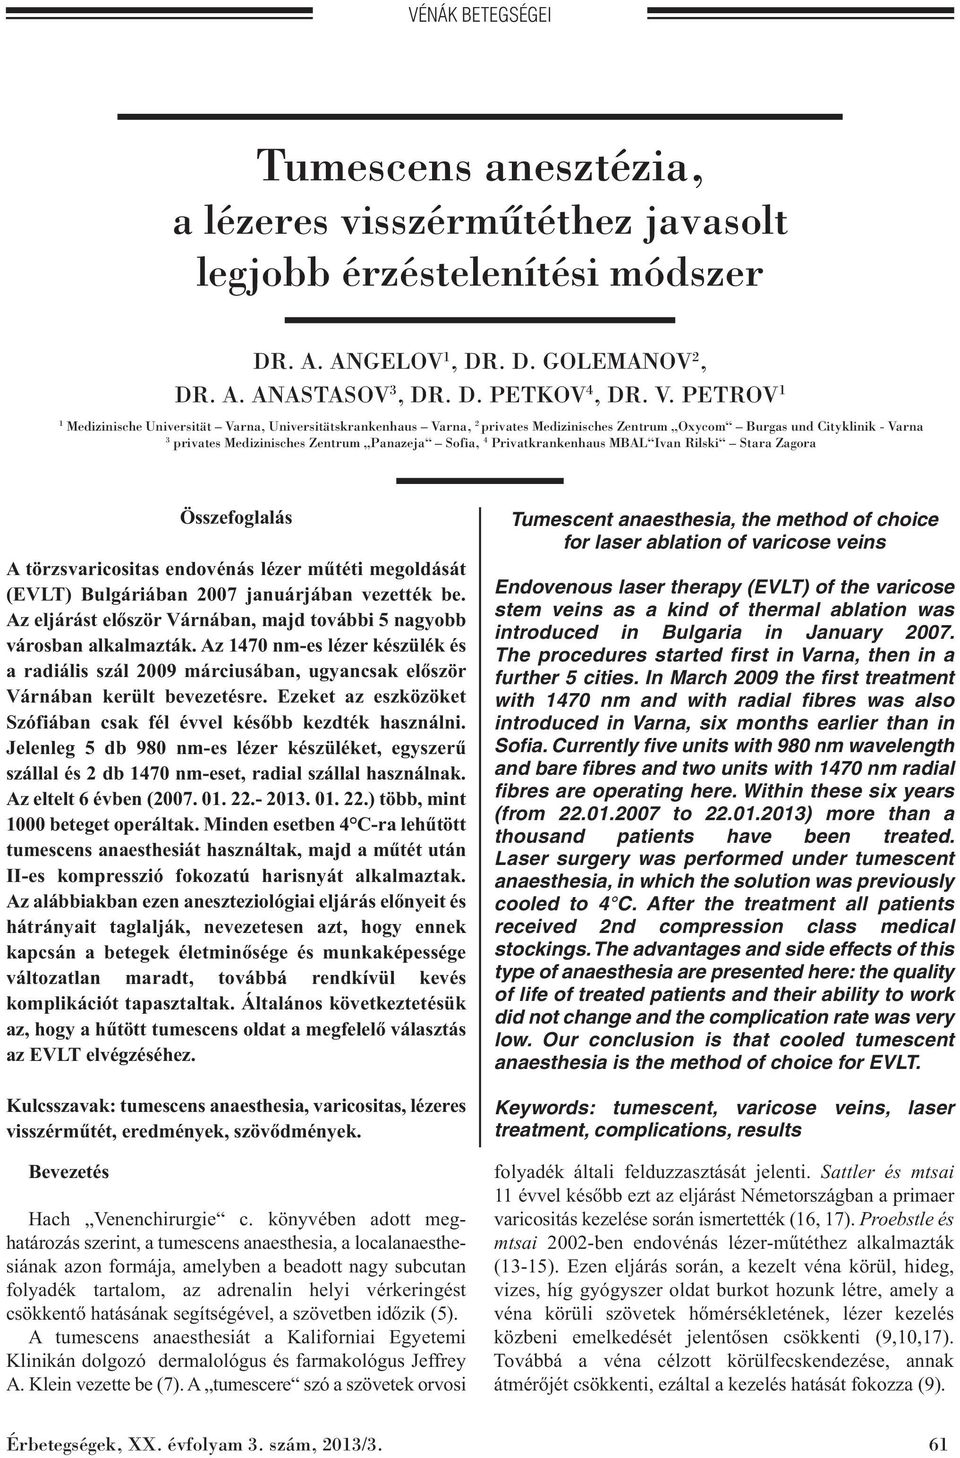 Privatkrankenhaus MBAL Ivan Rilski Stara Zagora Összefoglalás A törzsvaricositas endovénás lézer műtéti megoldását (EVLT) Bulgáriában 2007 januárjában vezették be.